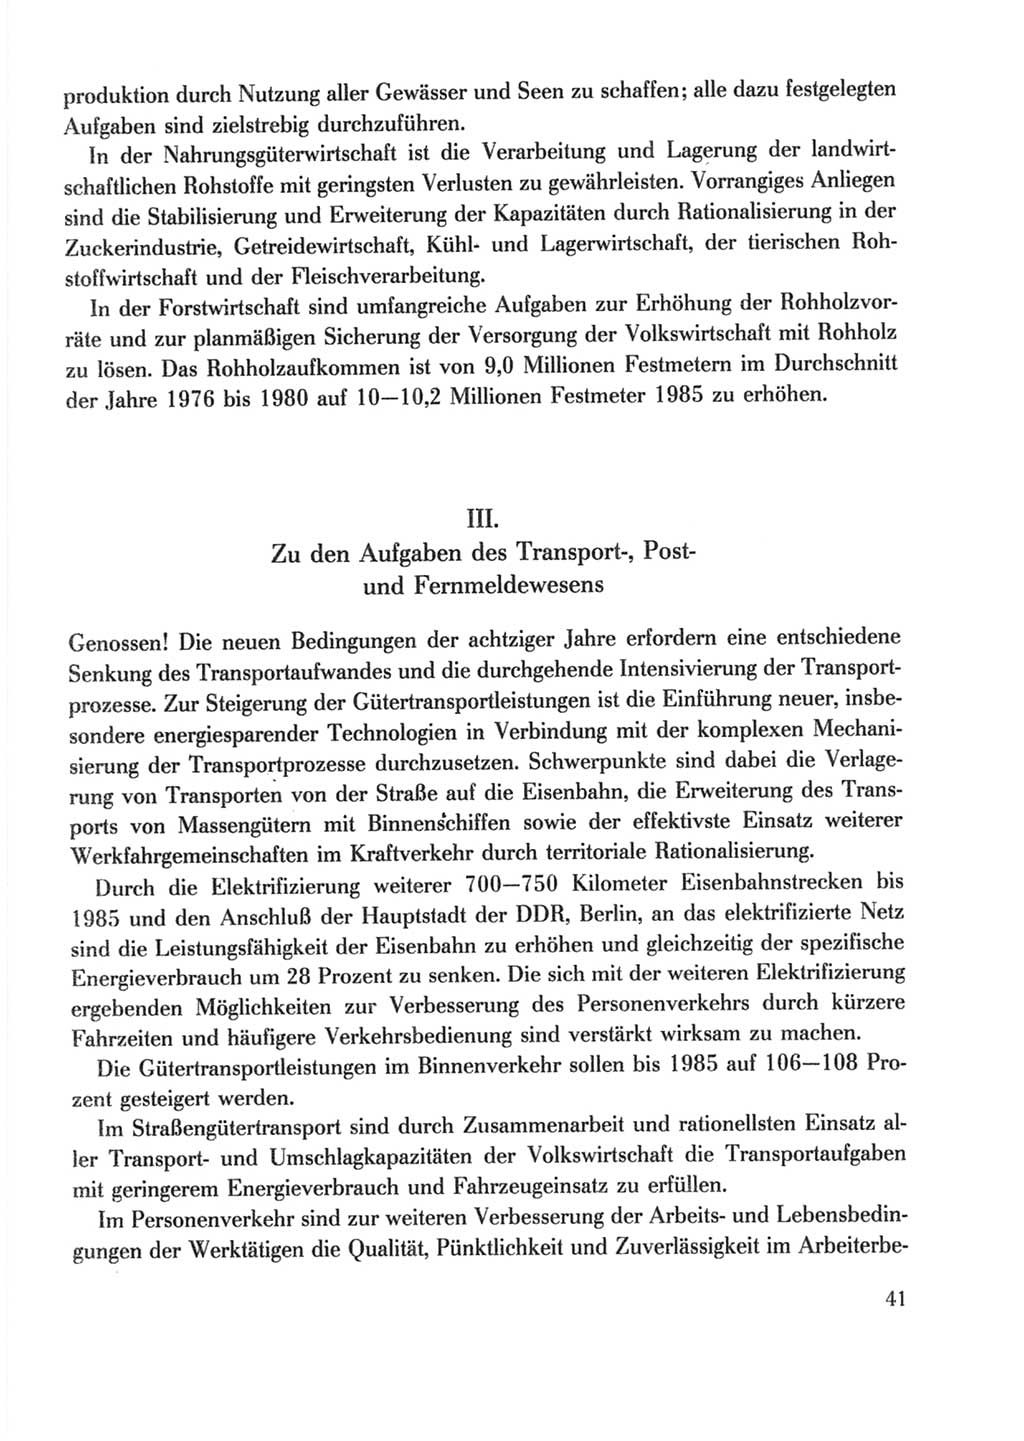 Protokoll der Verhandlungen des Ⅹ. Parteitages der Sozialistischen Einheitspartei Deutschlands (SED) [Deutsche Demokratische Republik (DDR)] 1981, Band 2, Seite 41 (Prot. Verh. Ⅹ. PT SED DDR 1981, Bd. 2, S. 41)